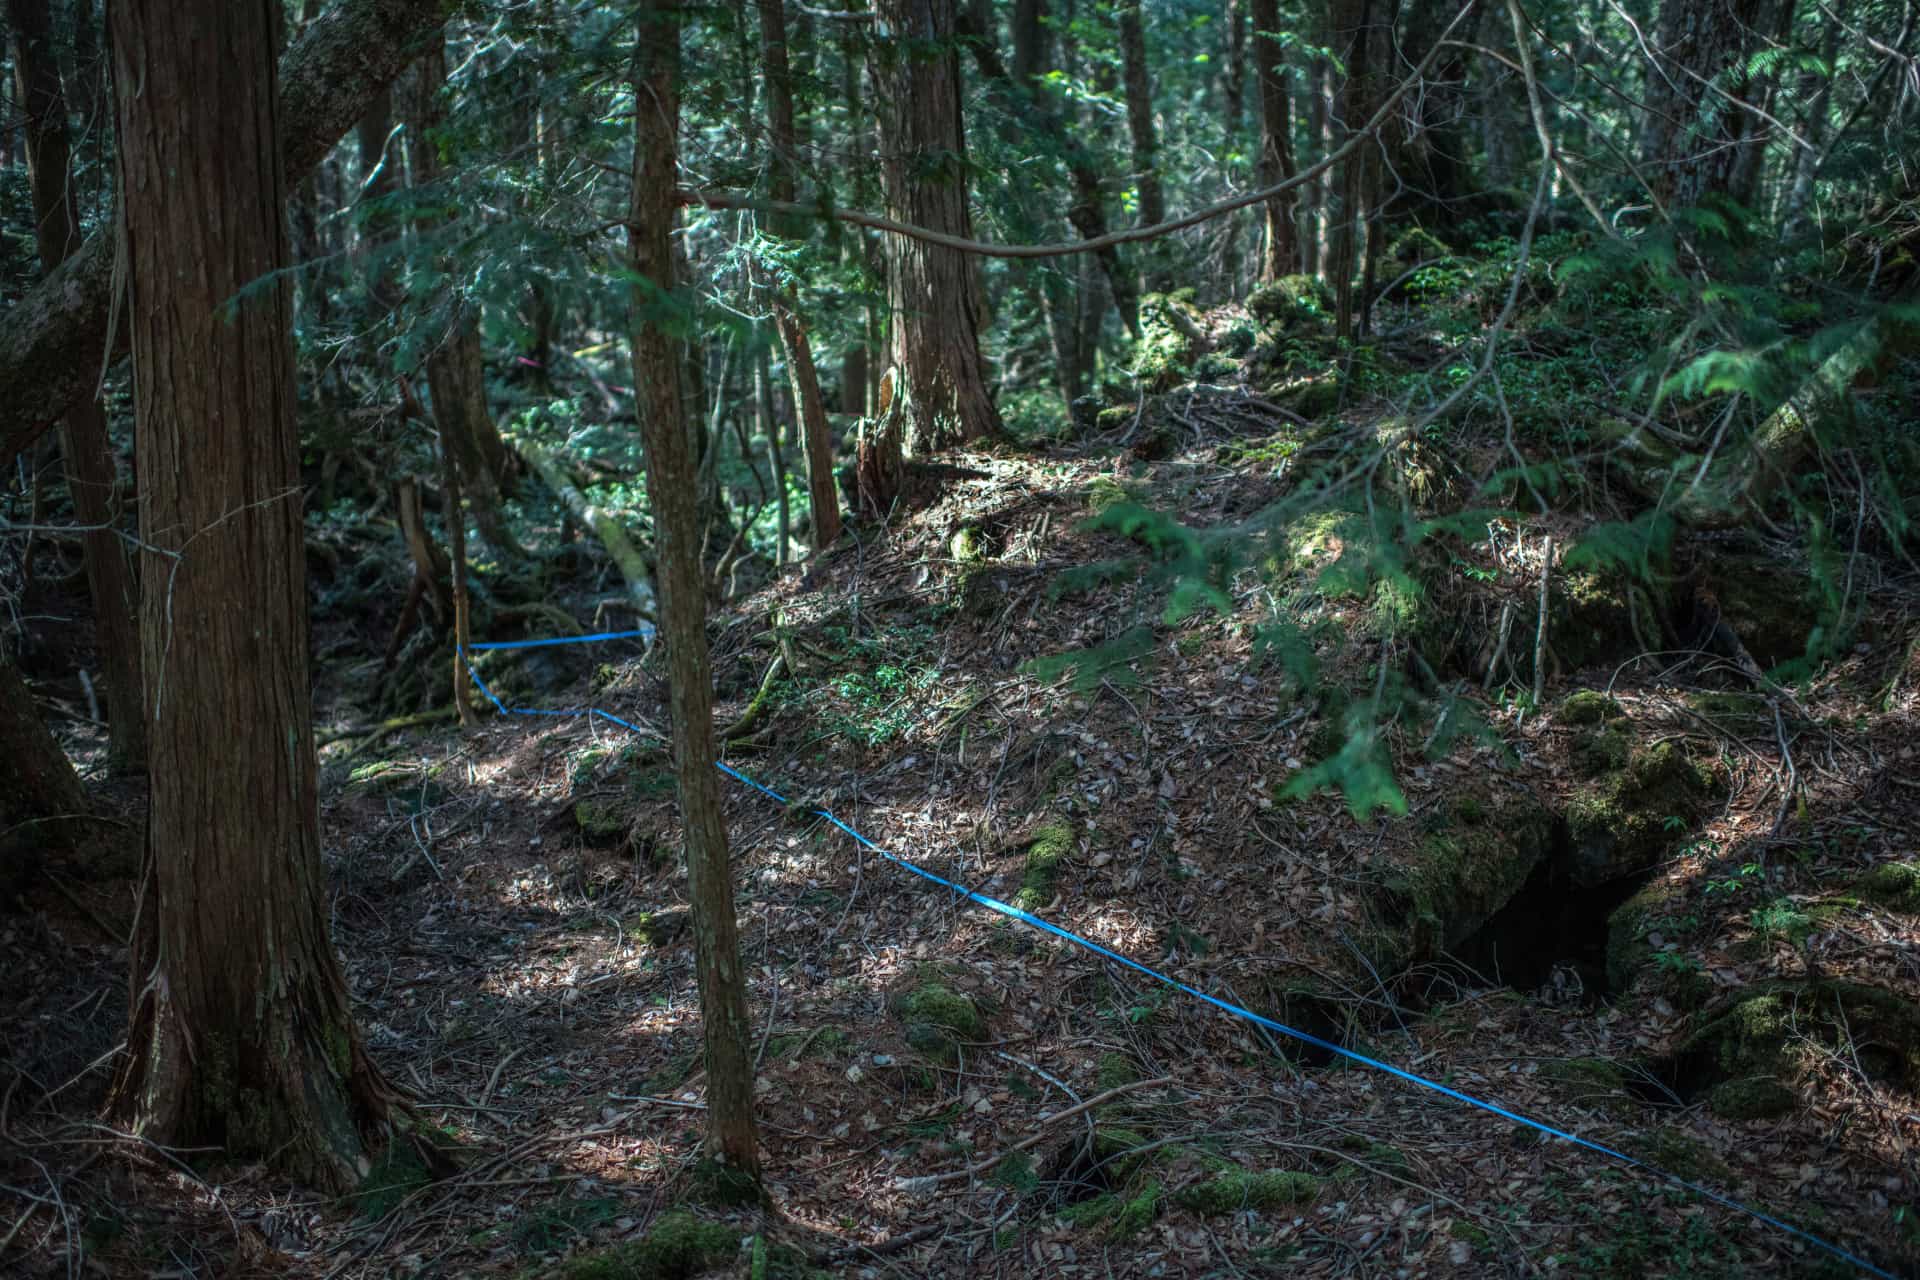 лес аокигахара в японии